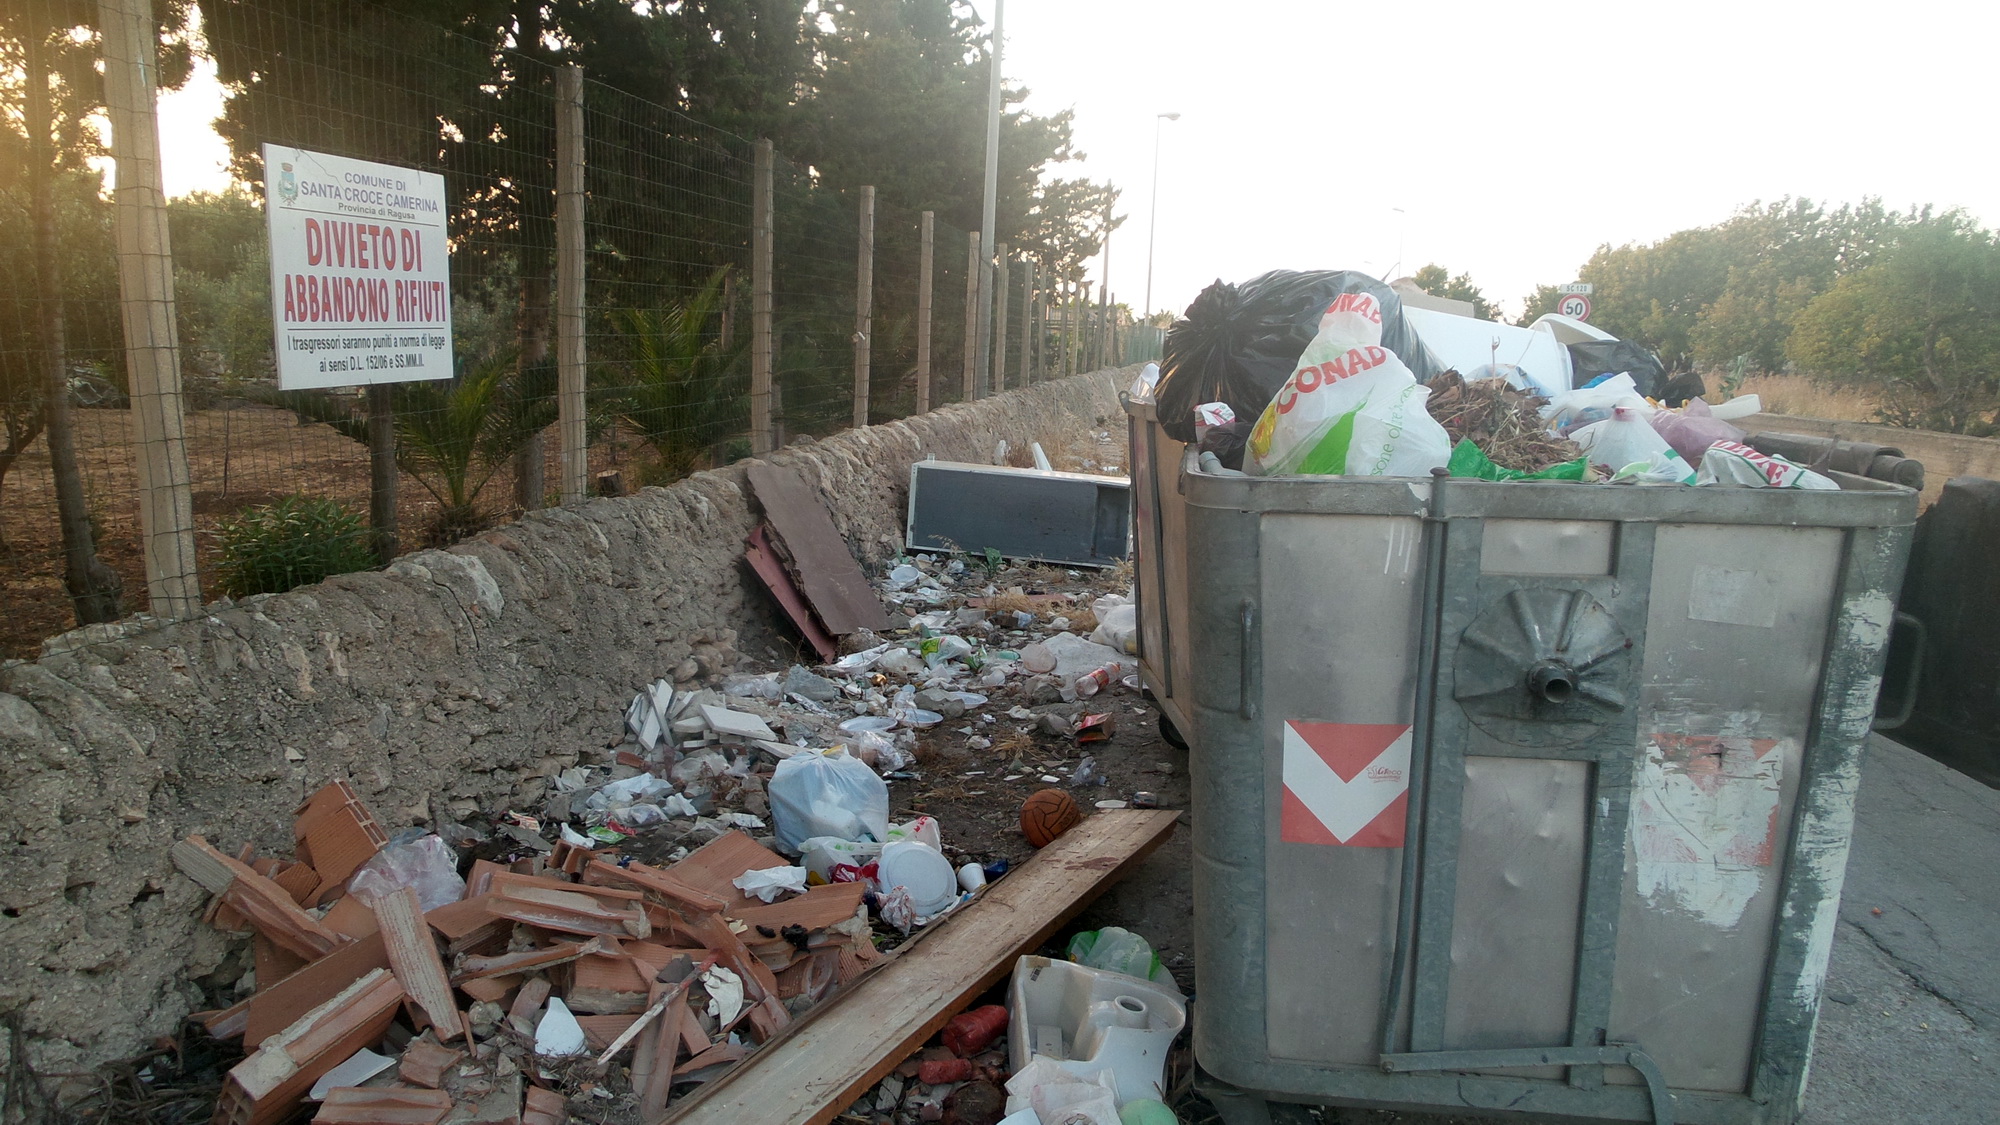  Erbacce e rifiuti accanto ai cassonetti, Fare Ambiente: “Punizioni severe”